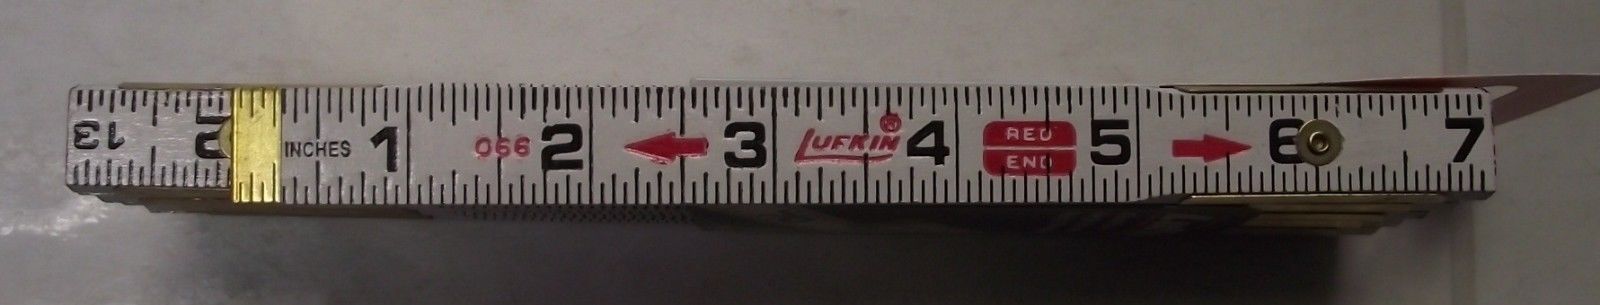 Lufkin T066N 6' x 5/8 Folding Wood Rule Red End